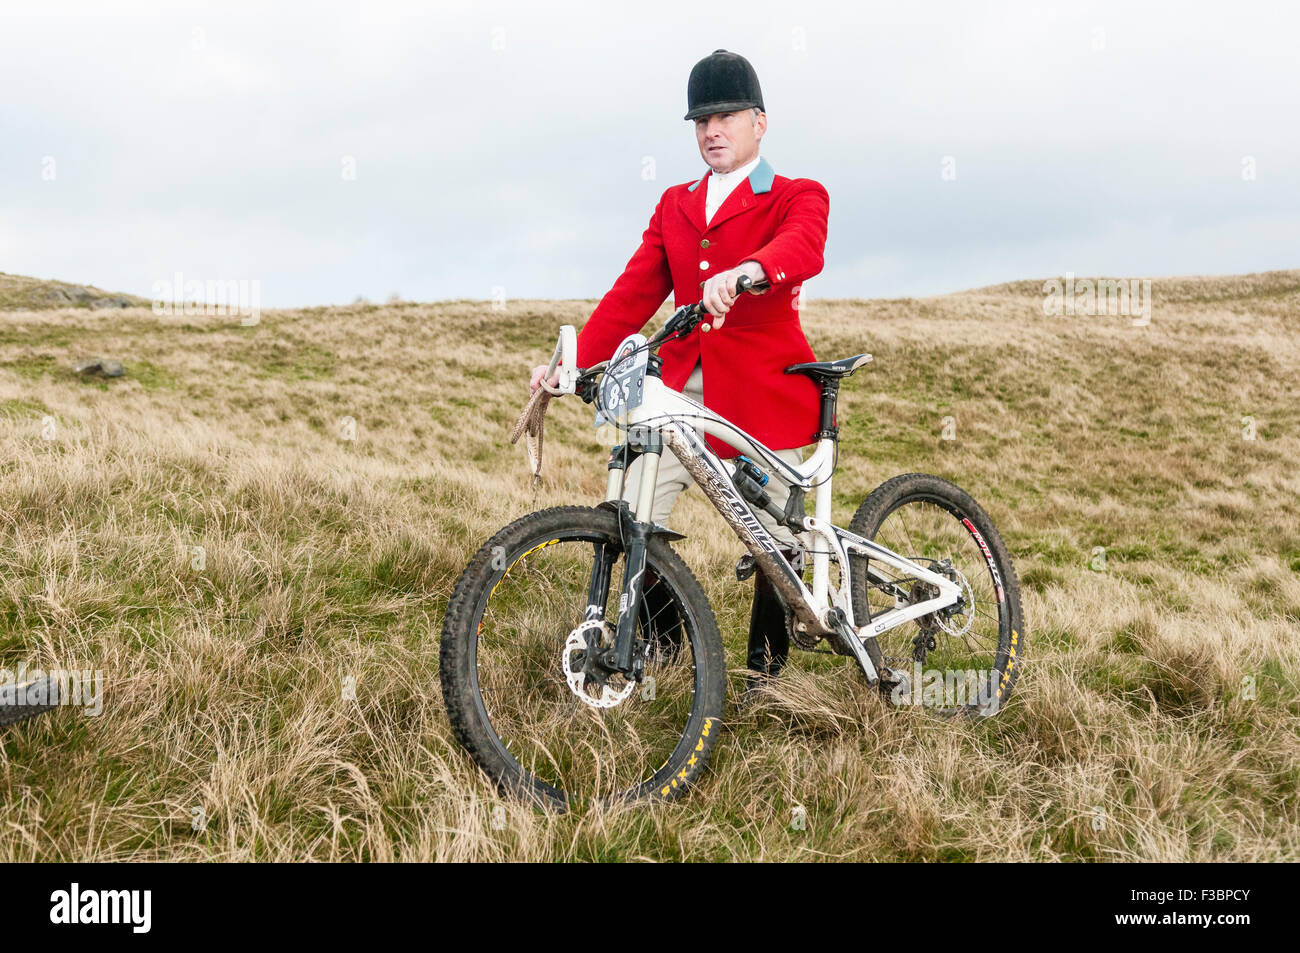 Rostrevor, Irlande du Nord. 04 Oct 2015 - Huntsman Declan Keenan avec un vélo de montagne, au lieu d'un cheval. Crédit : Stephen Barnes/Alamy Live News Banque D'Images